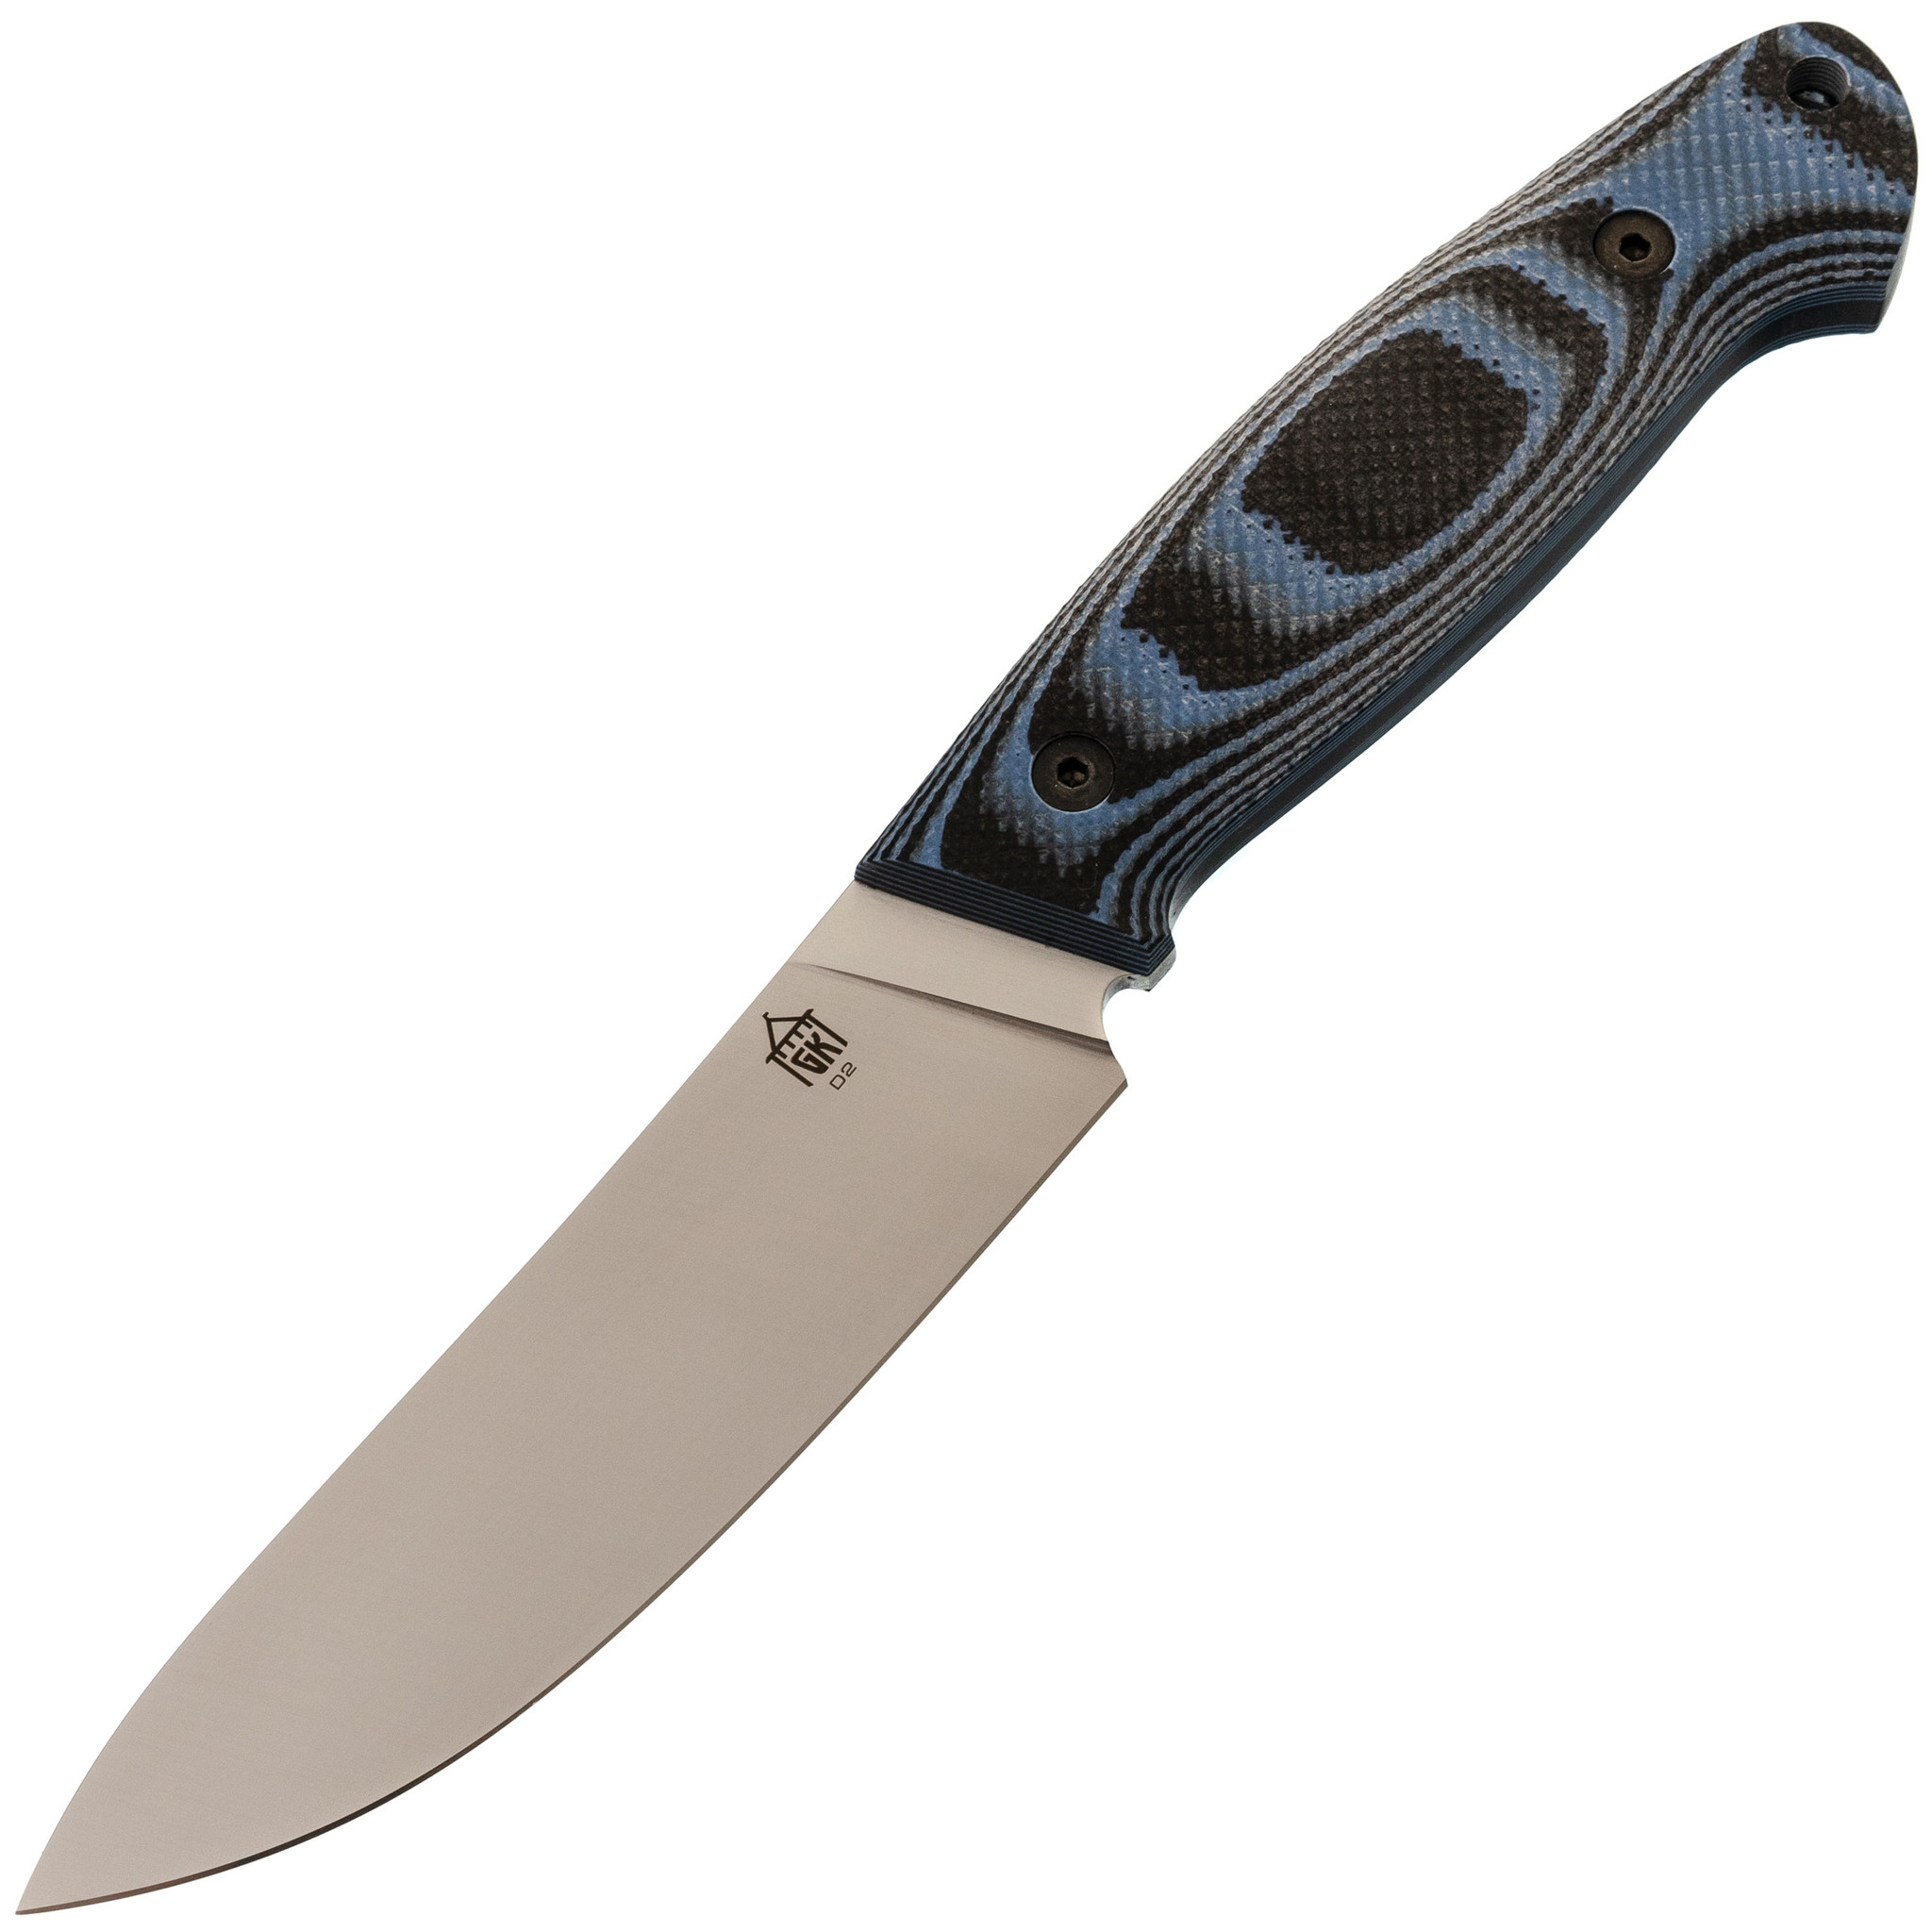 Нож Охотник, сталь D2, рукоять G10 черно-синяя нож с фиксированным клинком gerber gator сталь 420hc рукоять стеклотекстолит g10